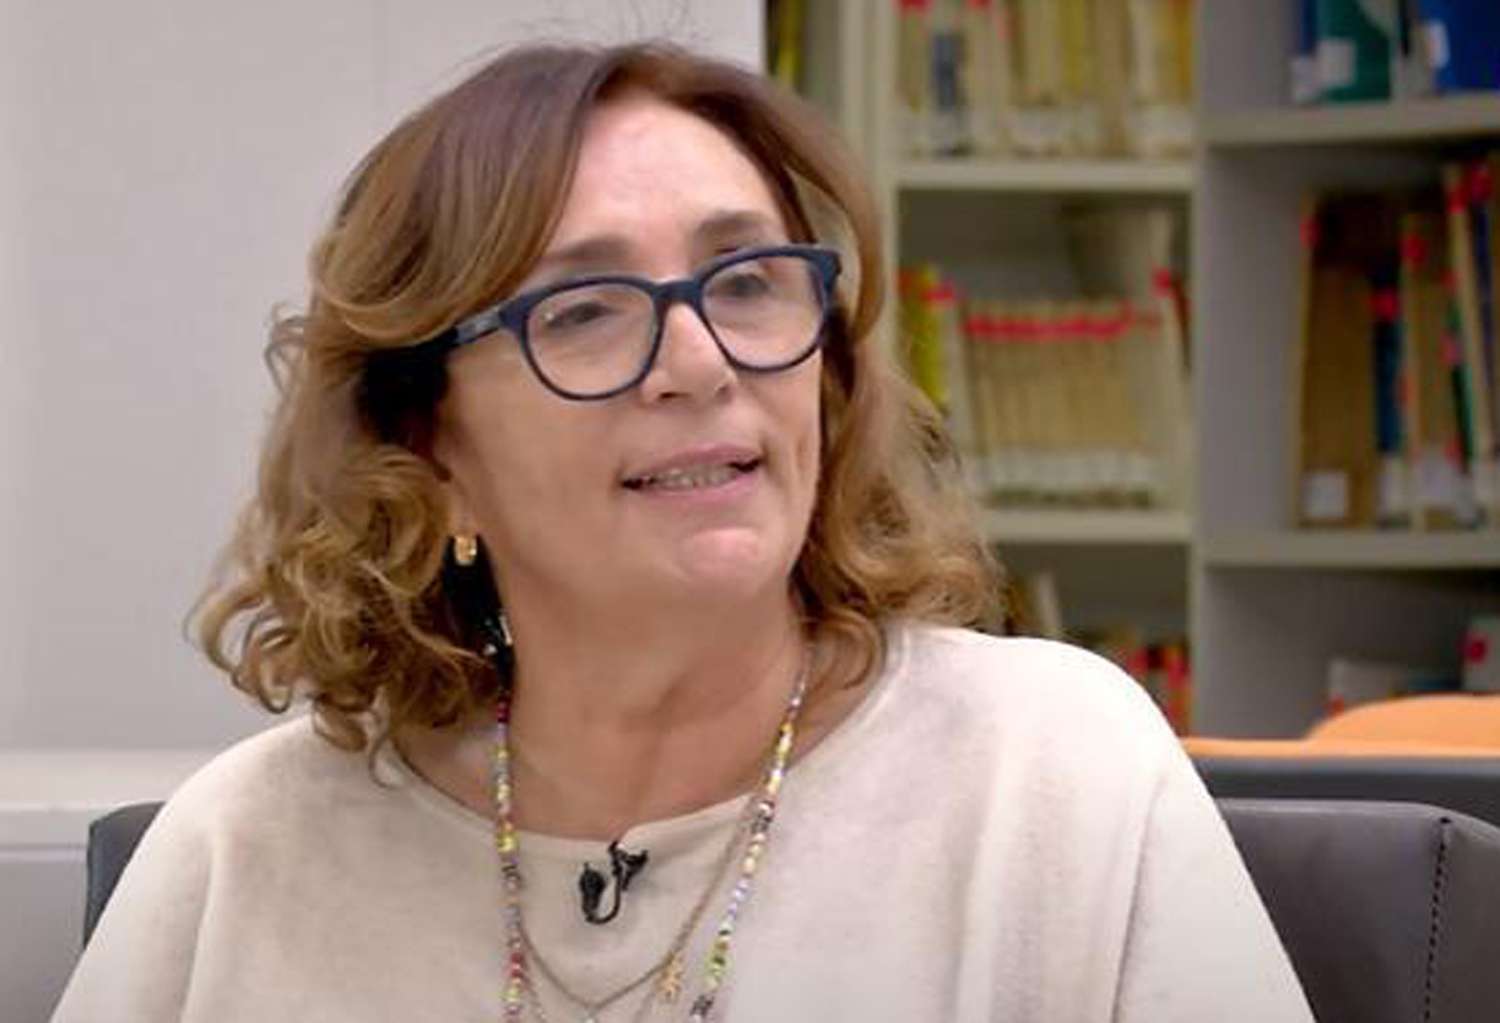 La vicerrectora de la Unicen, Alicia Spinello, brindó detalles sobre el conflicto desatado por los descuentos a docentes.